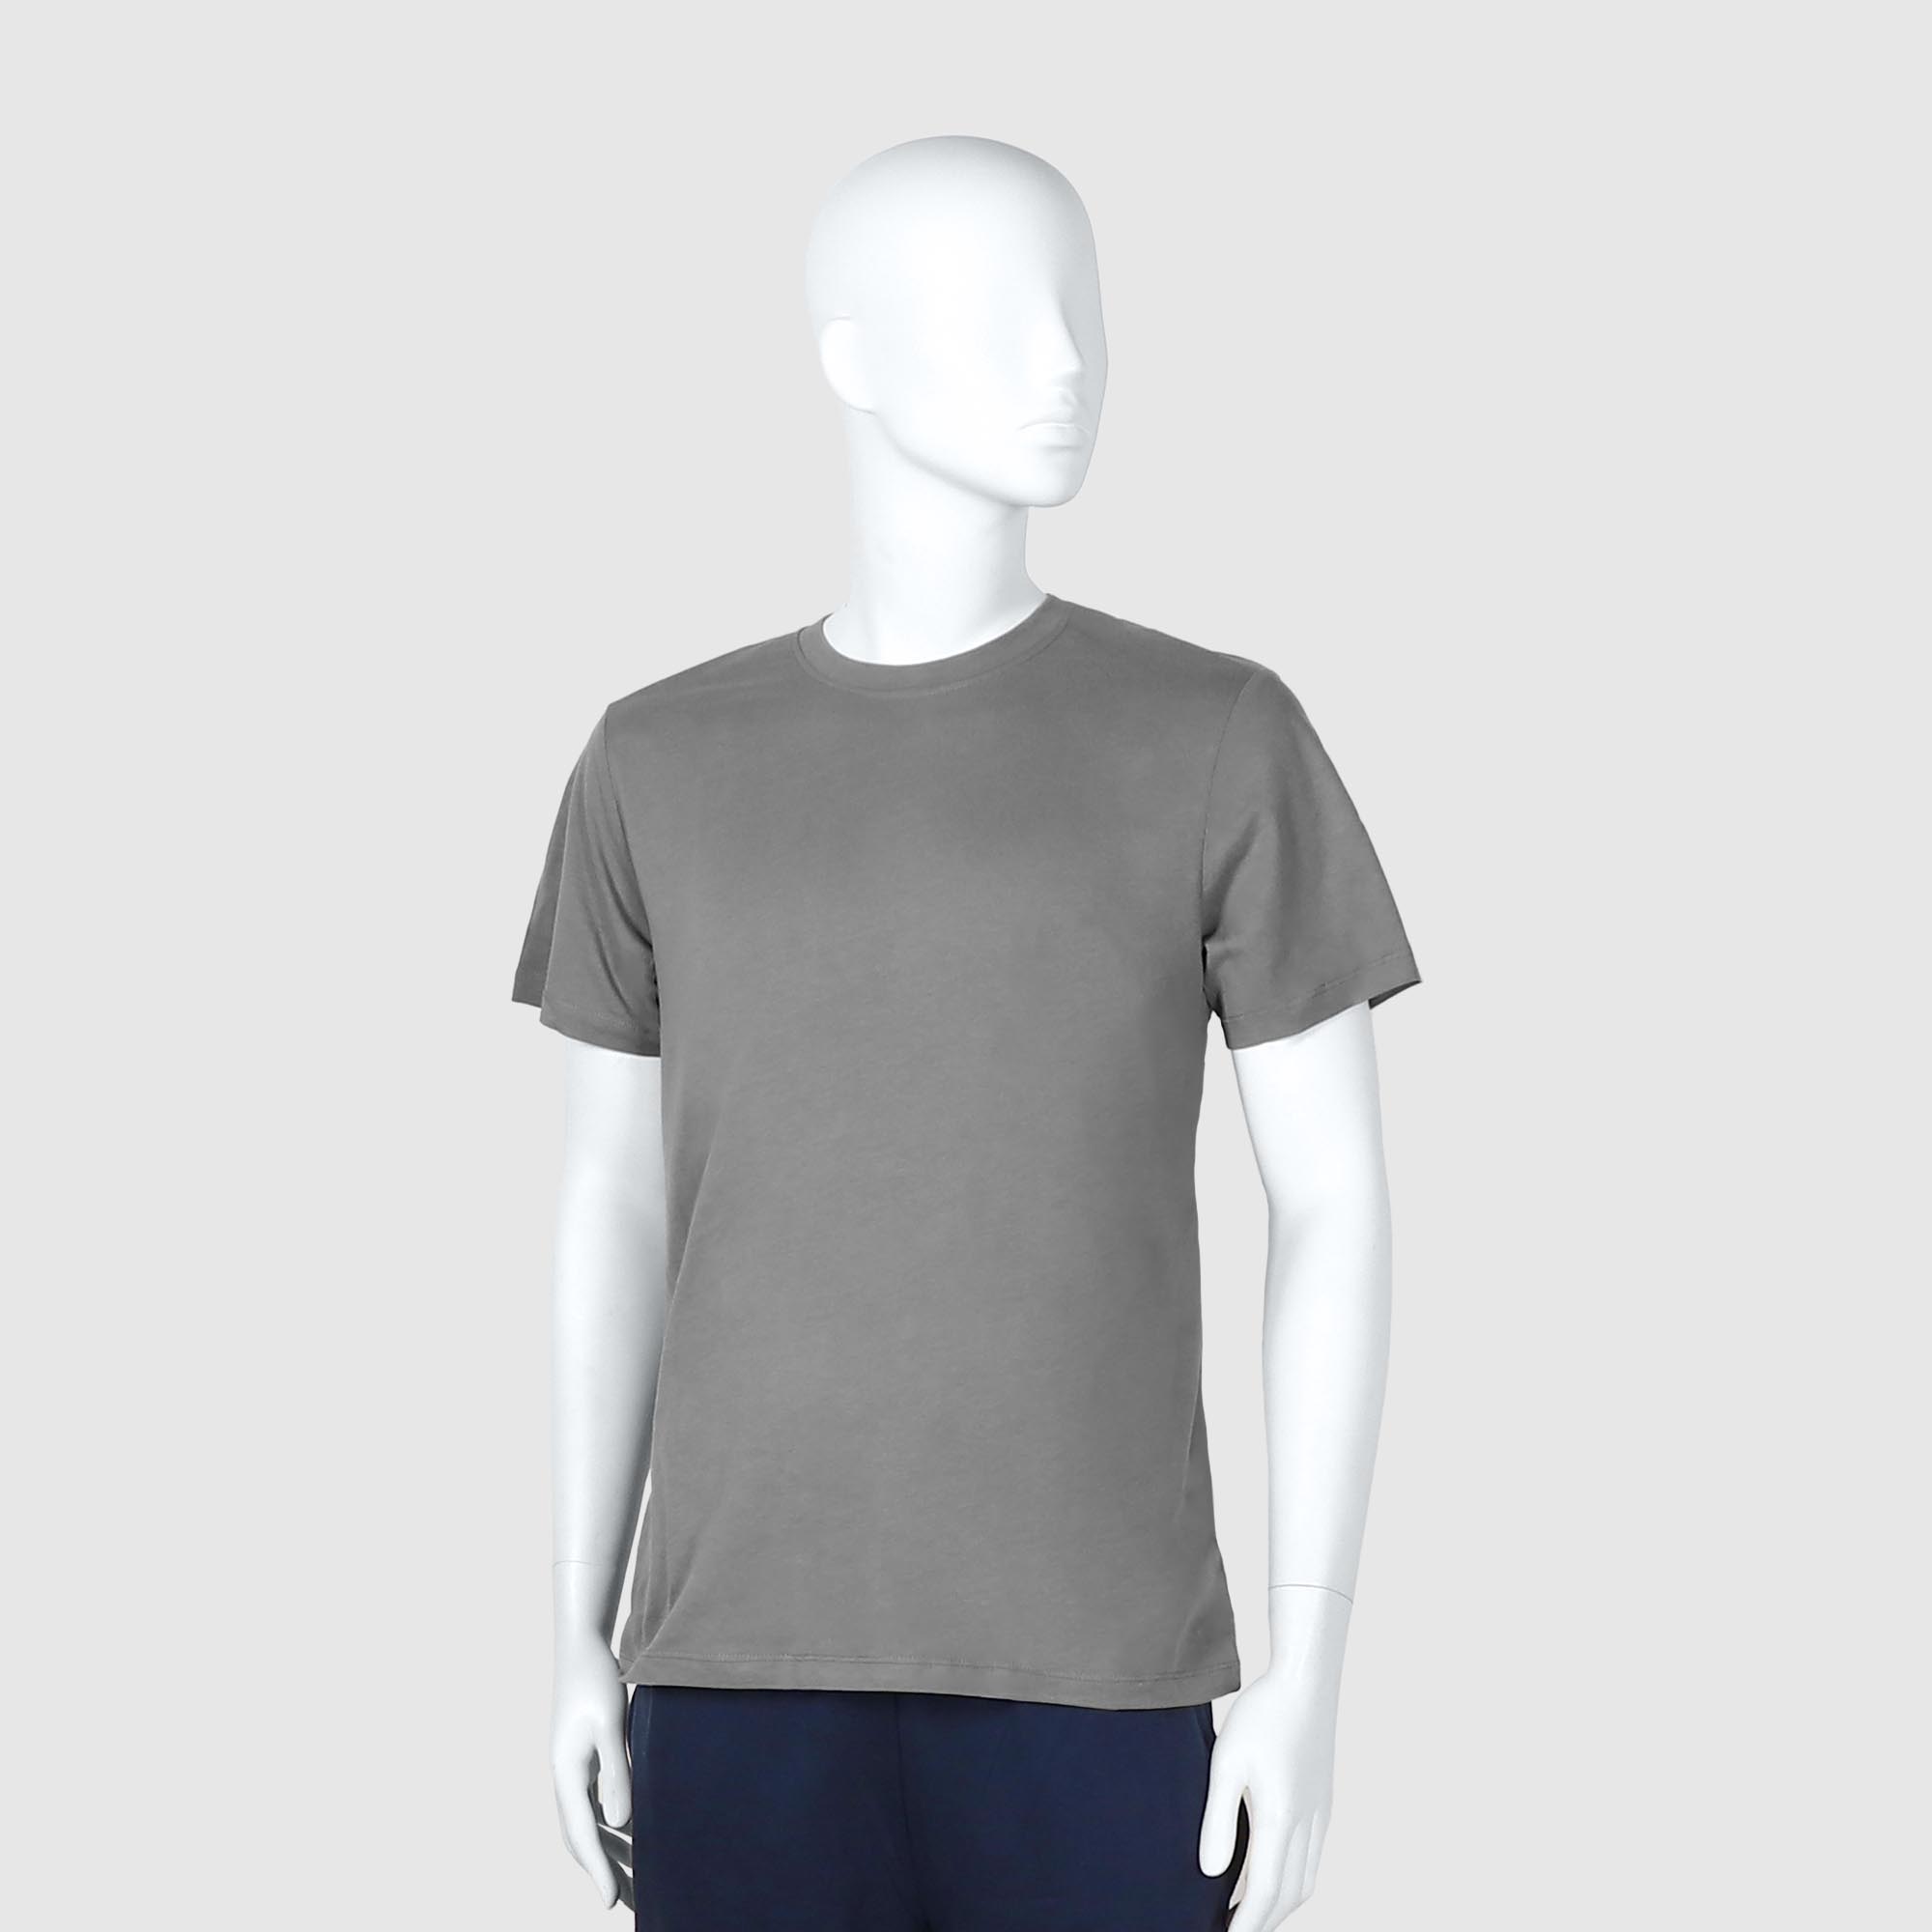 Мужская футболка Diva Teks серая (DTD-04), цвет серый, размер 54-56